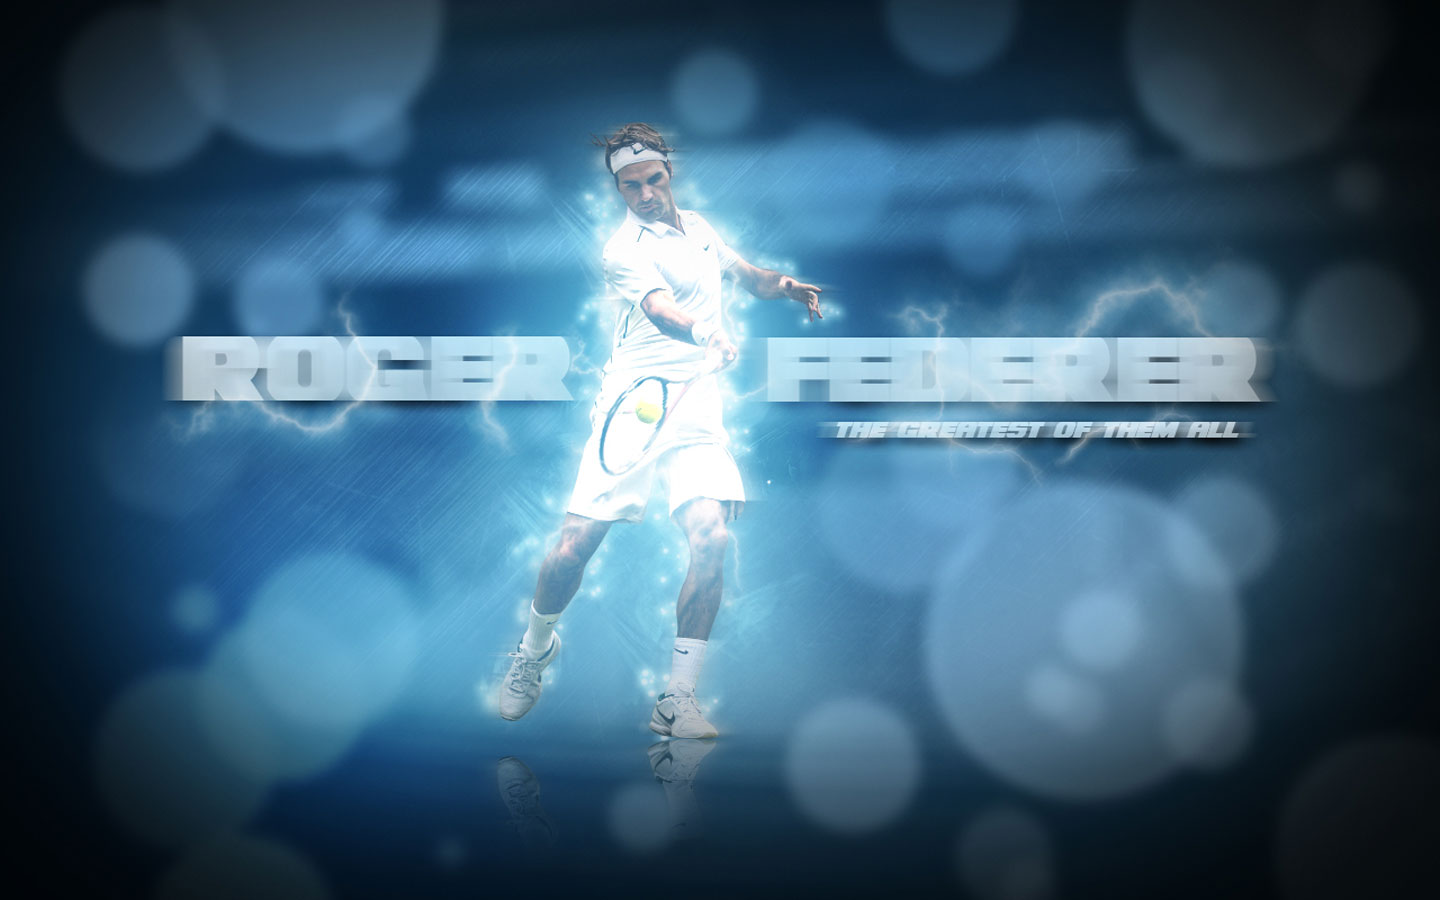 Roger Federer Picture